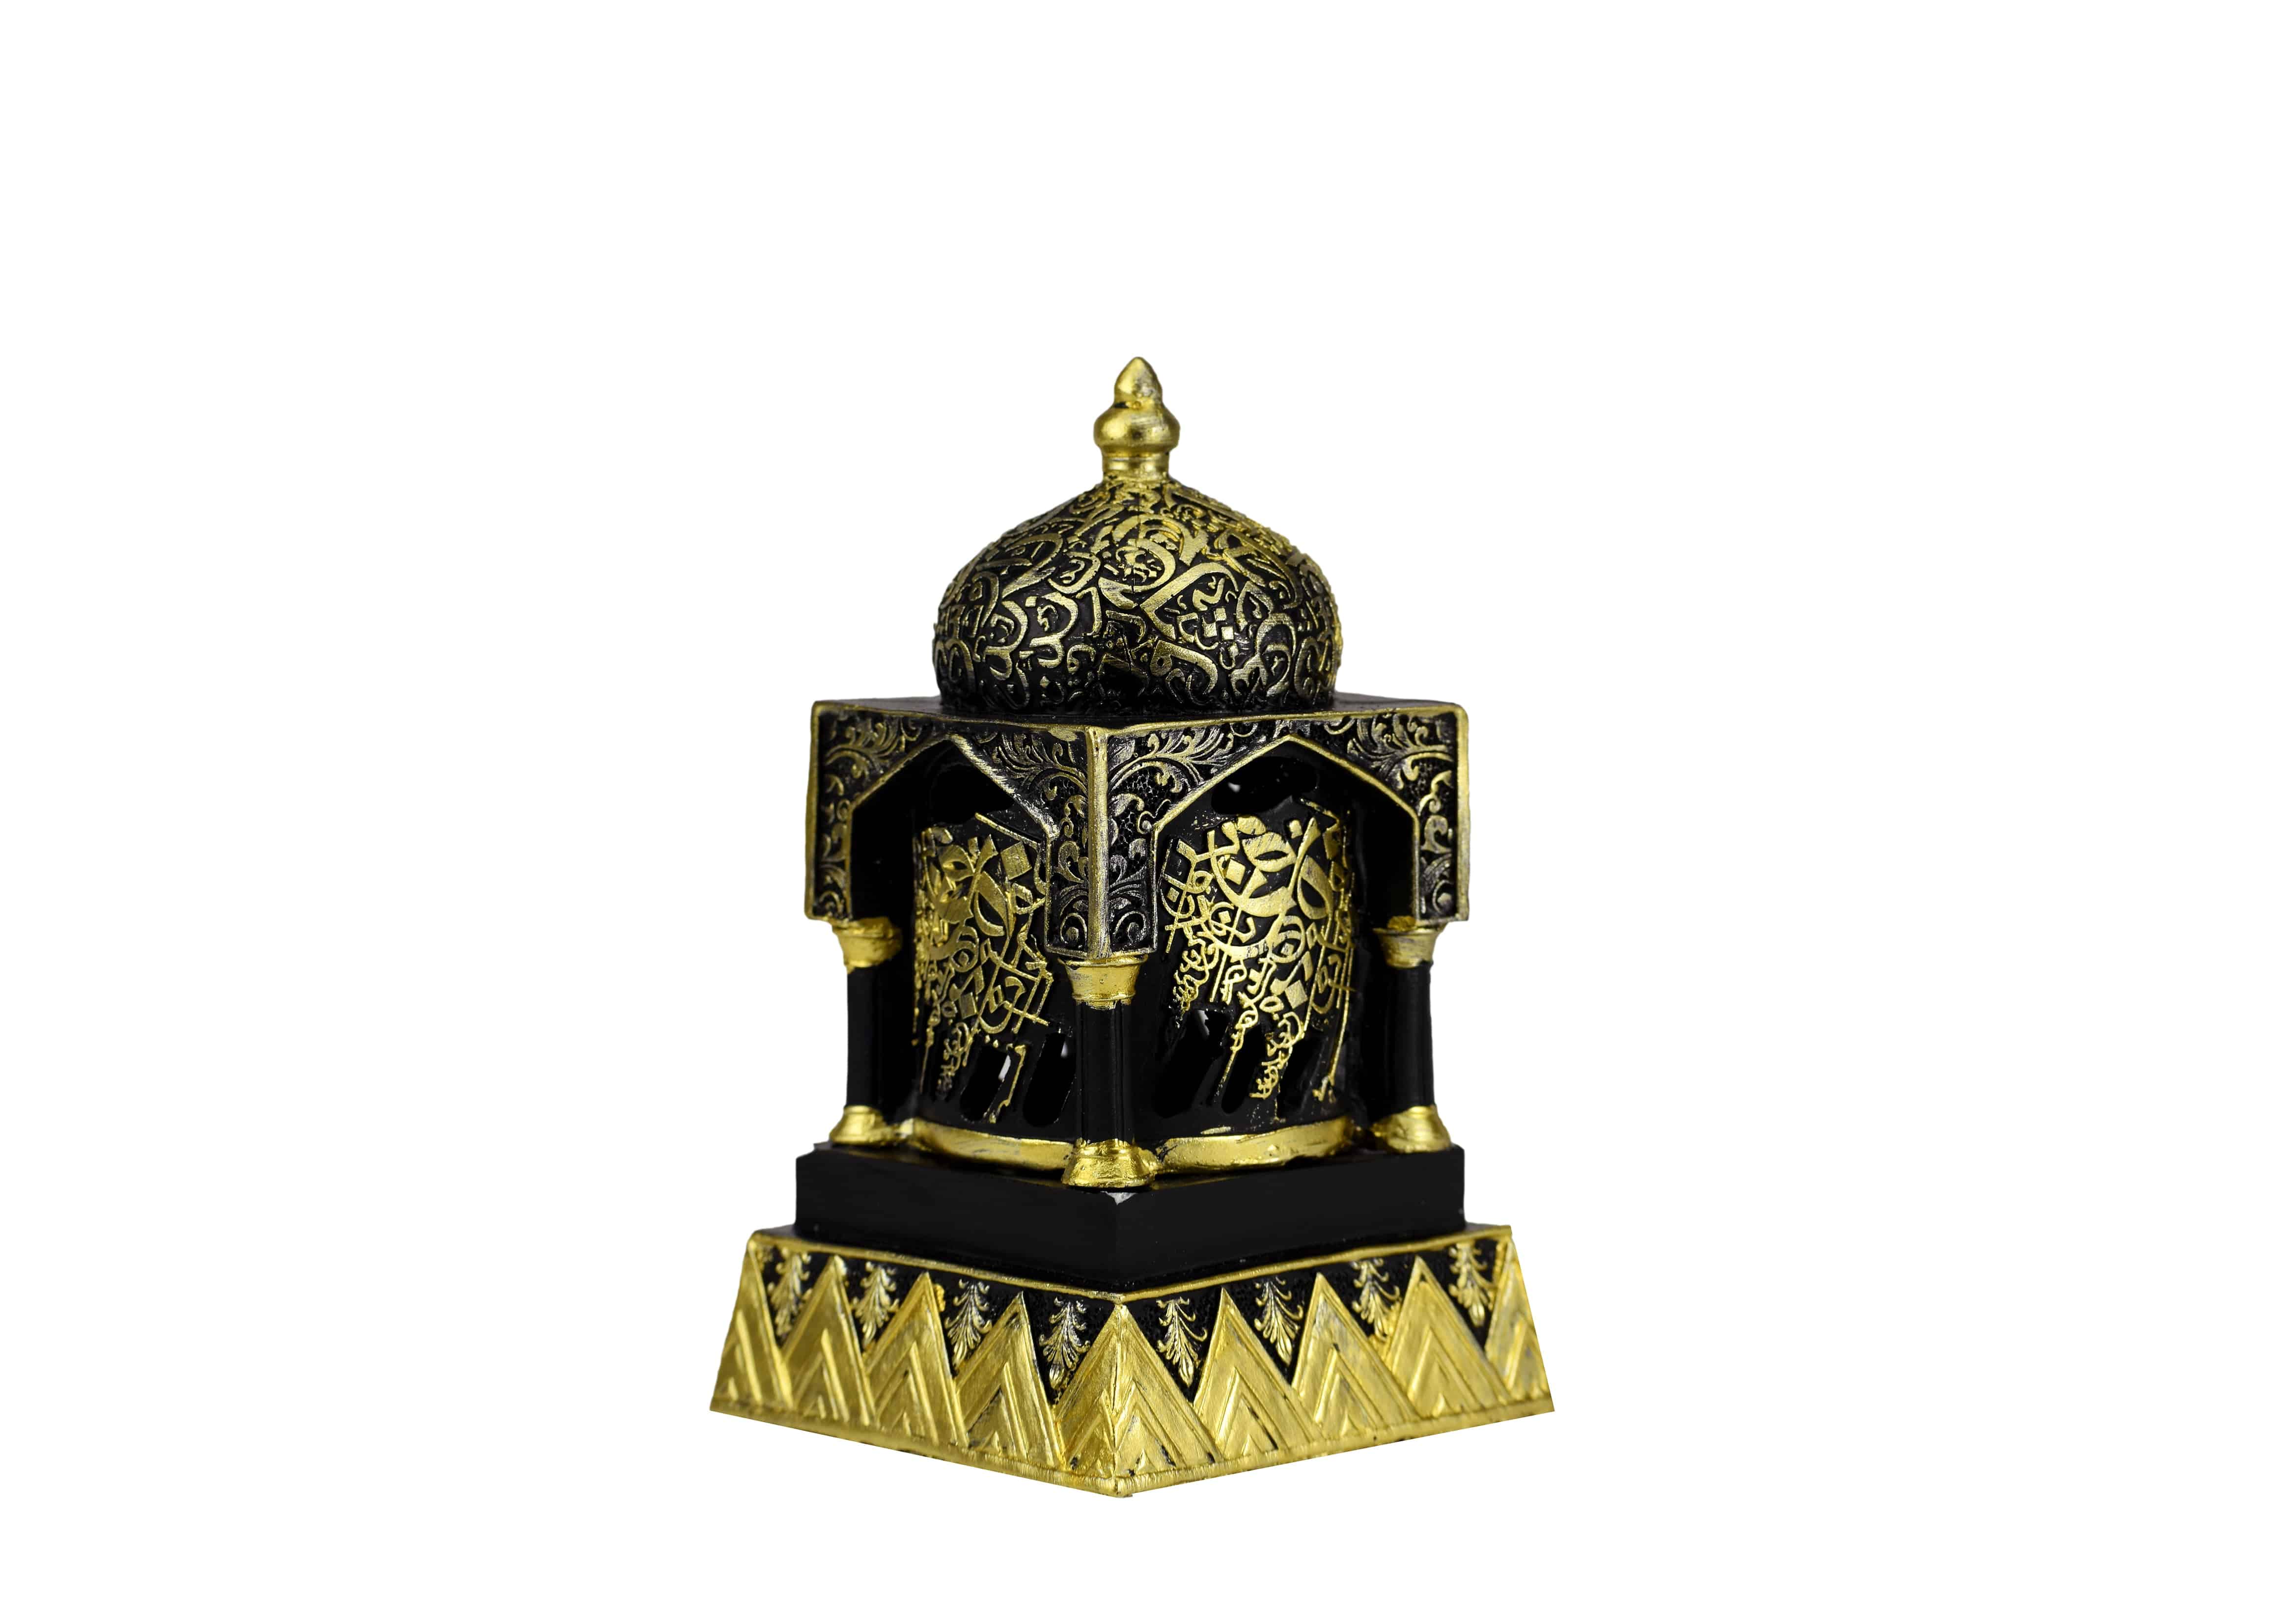 Engraved Caligraphy Minaret Style Incense Bakhoor Burner - 6 in. Black - Intense oud